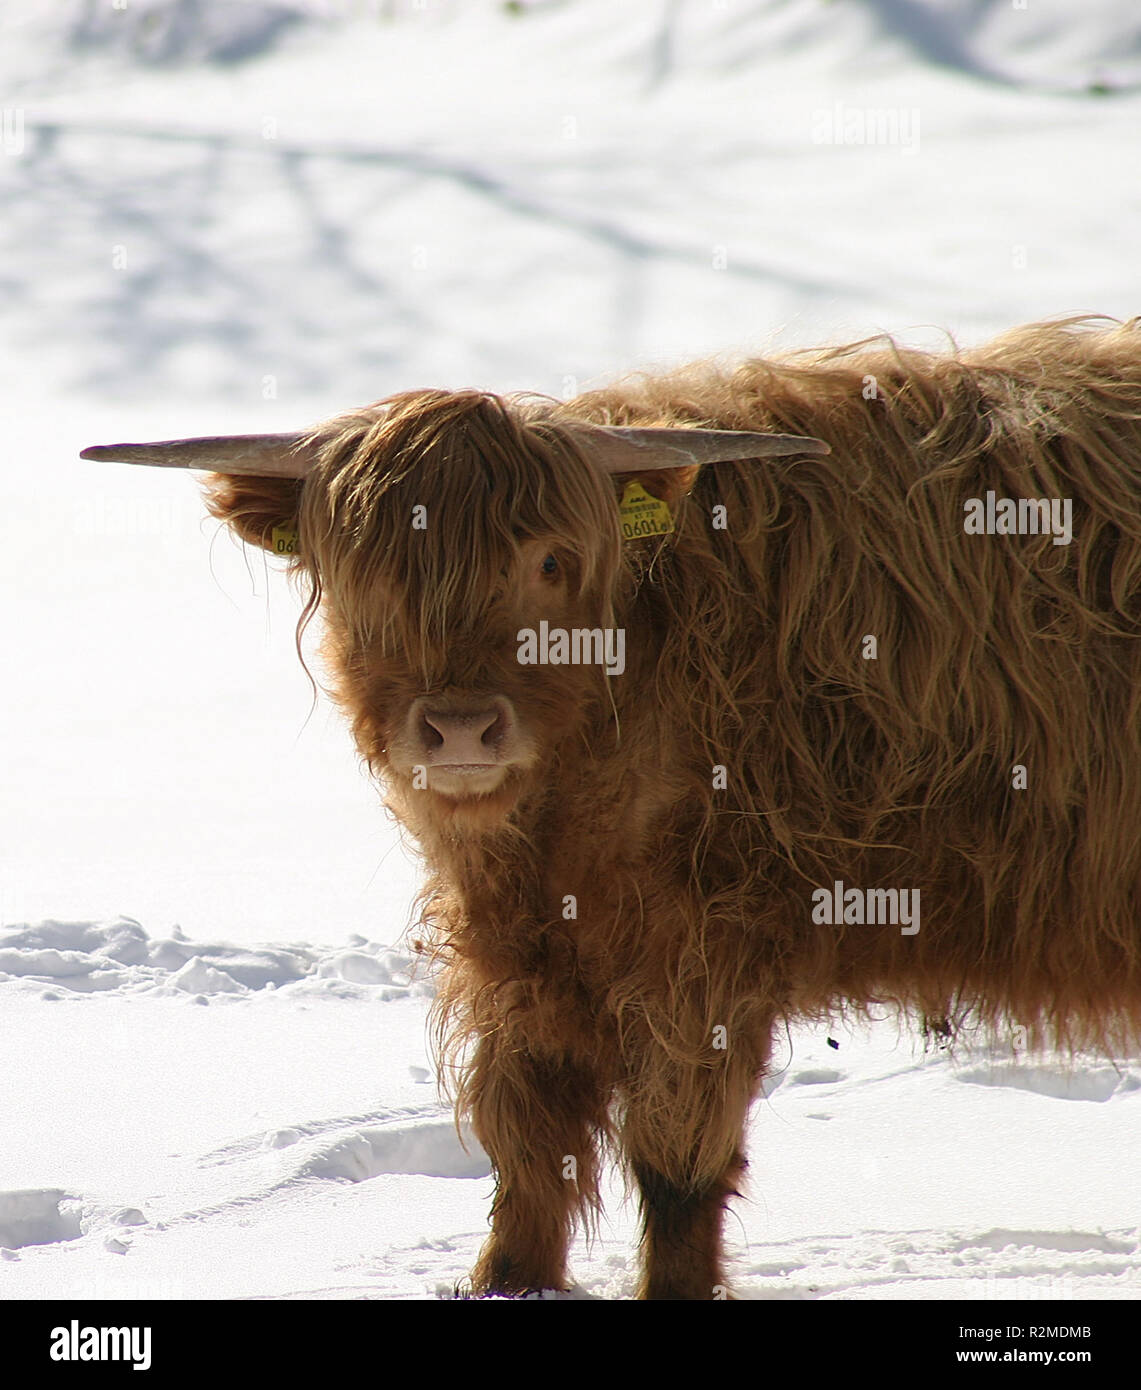 scottish highland cattle Stock Photo